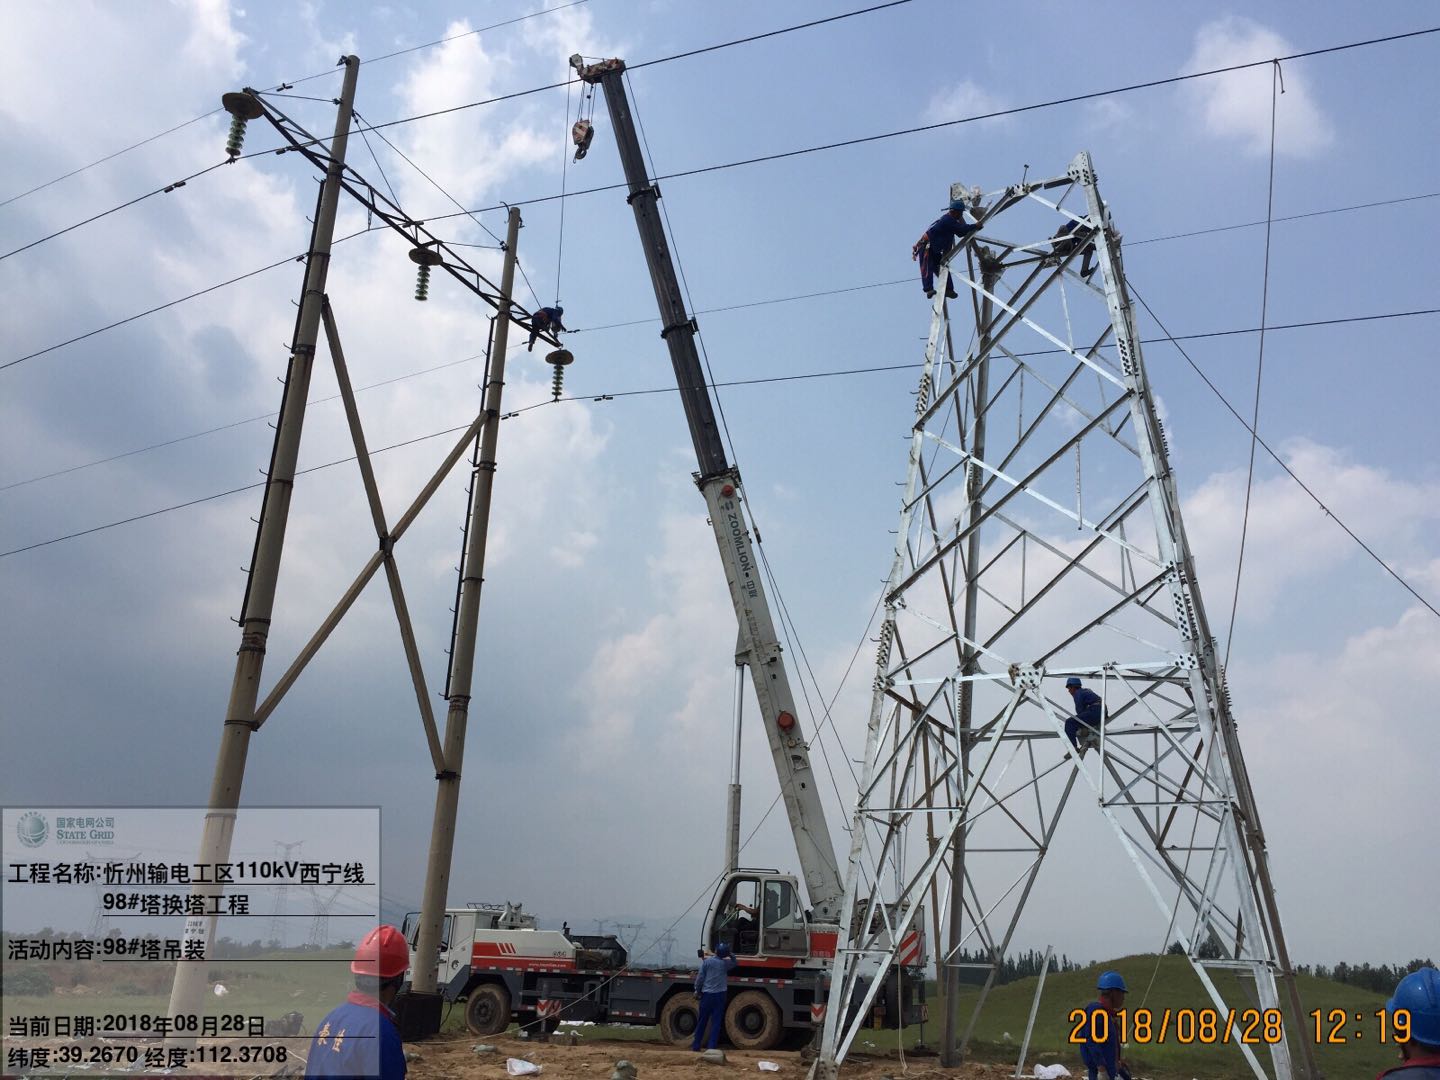 忻州输电工区110kV西宁线换塔工程进入铁塔吊装阶段 